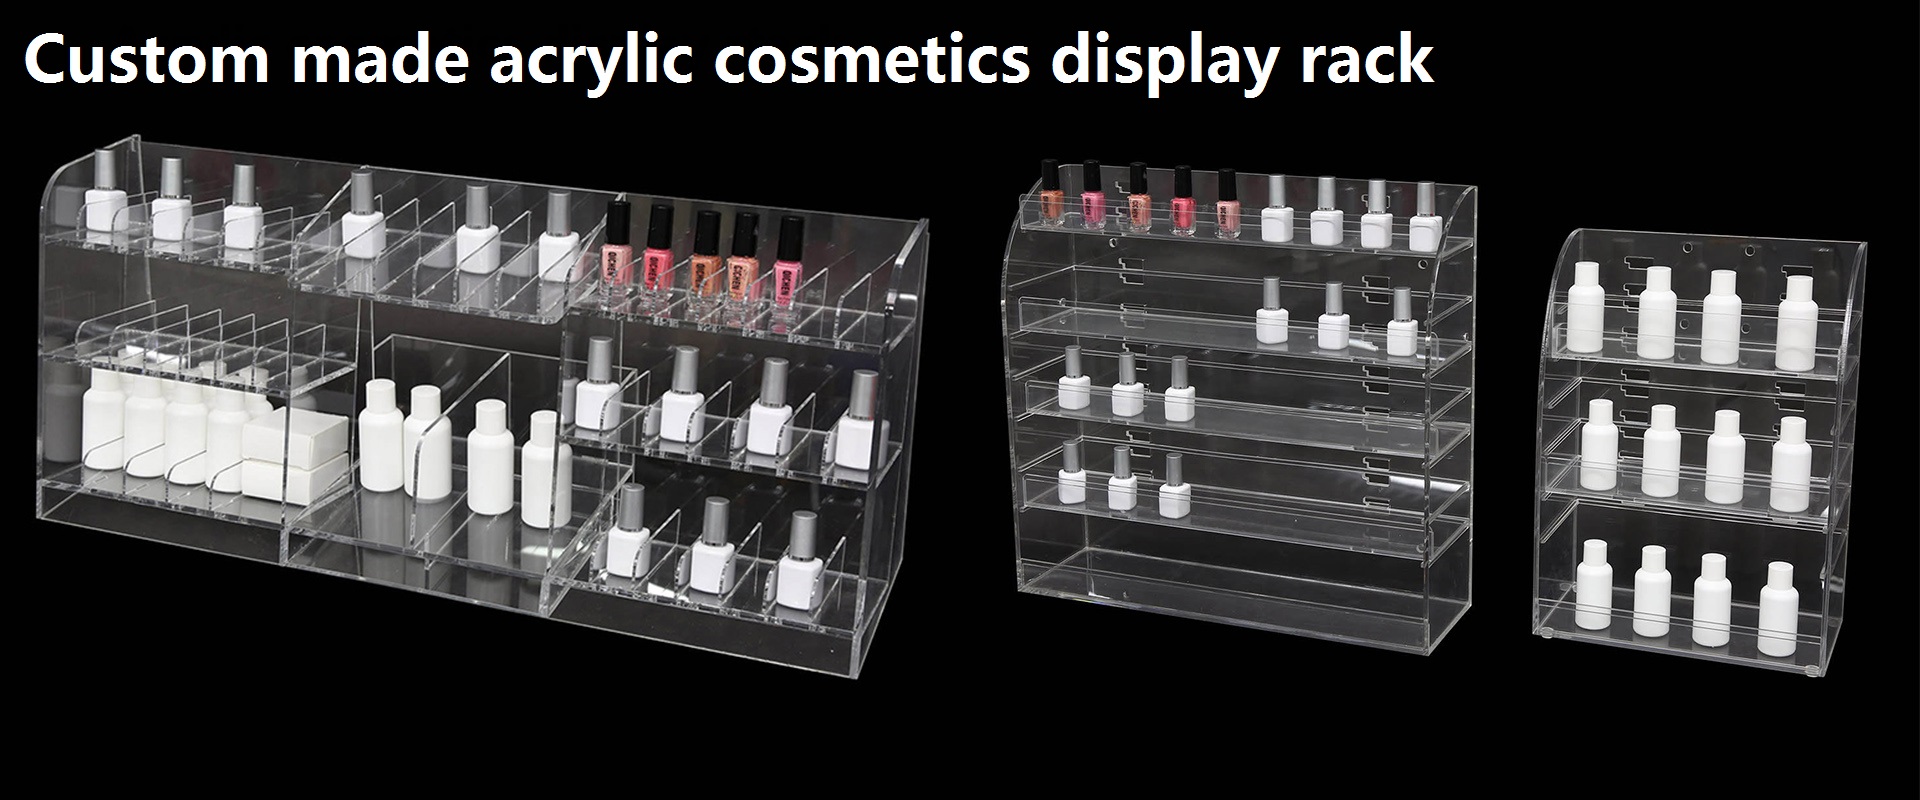 Acrylic cosmetics display rack